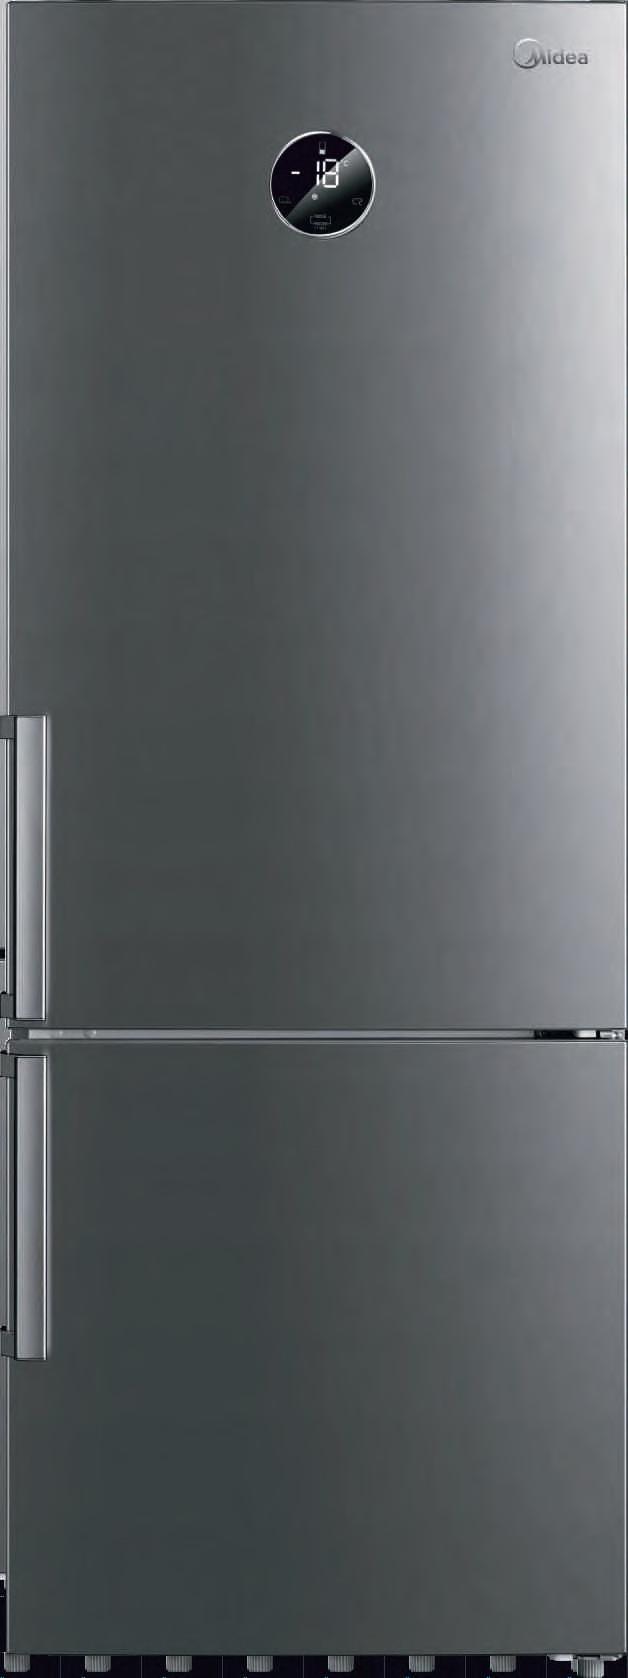 MIDEA RASHLADNI UREÐAJI Nezaobilazan uređaj svake kuhinje je hladnjak, neophodan za pravilno skladištenje svježe i smrznute hrane.